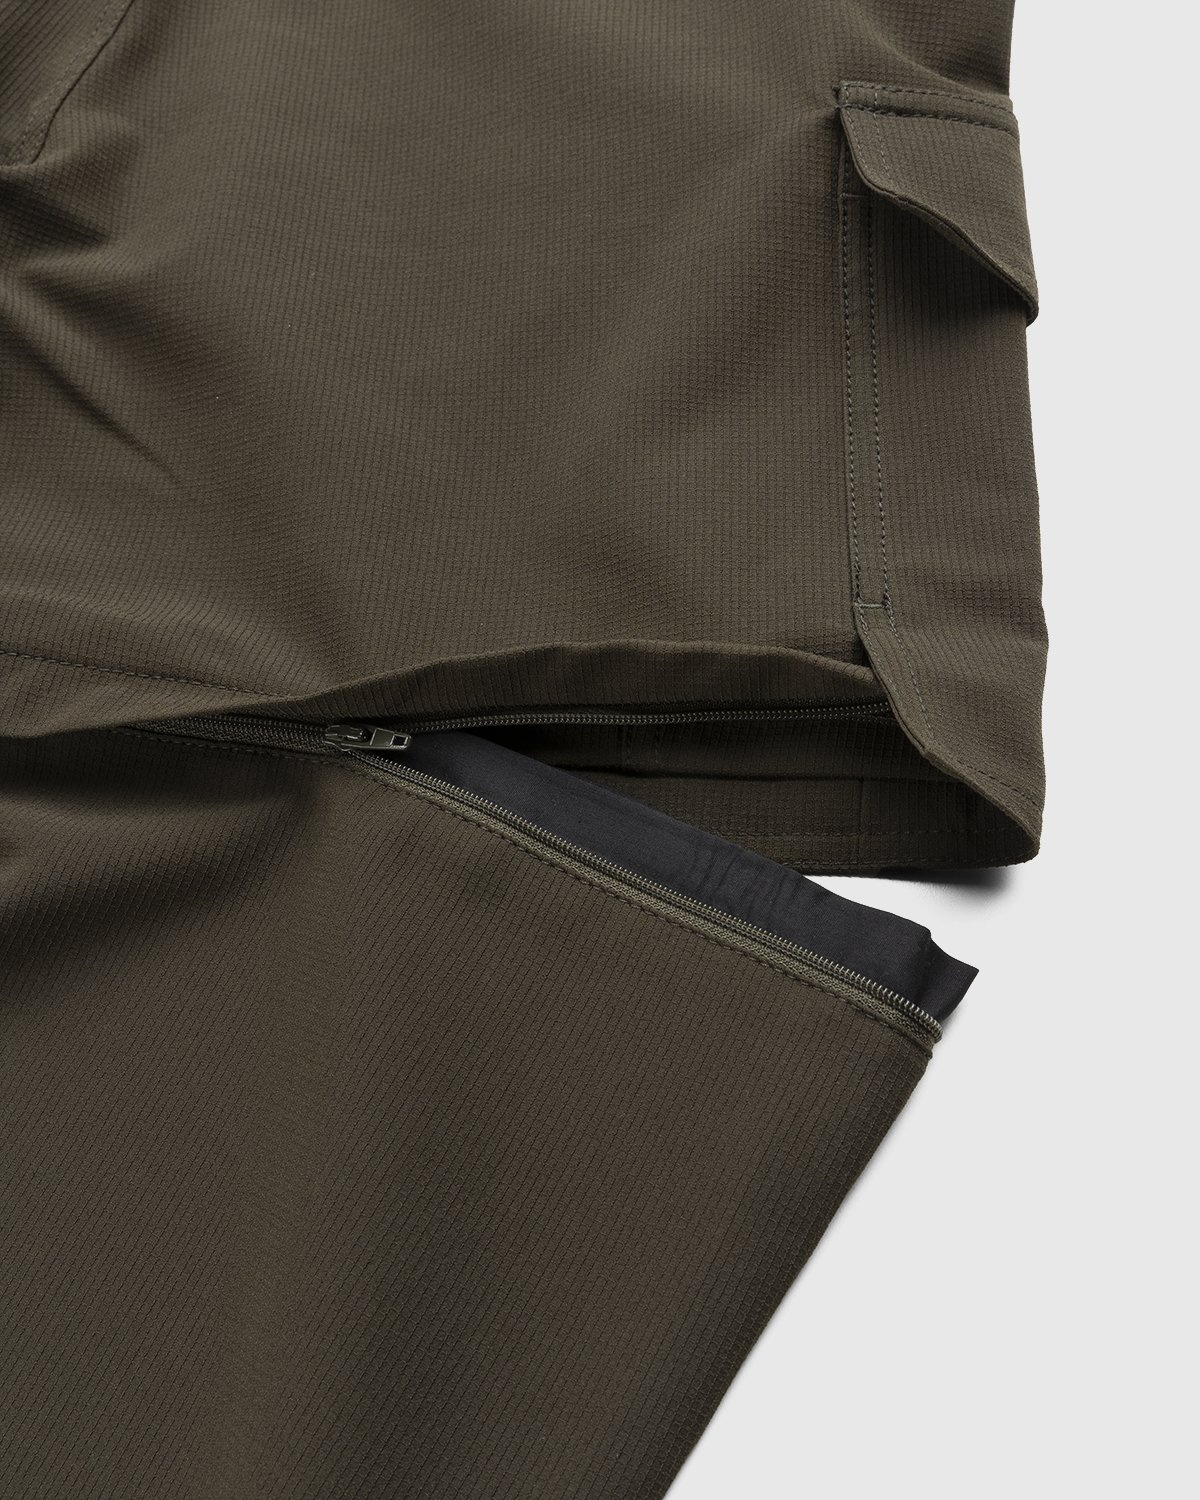 JACQUEMUS – Le Pantalon Peche Dark Khaki - Trousers - Green - Image 6